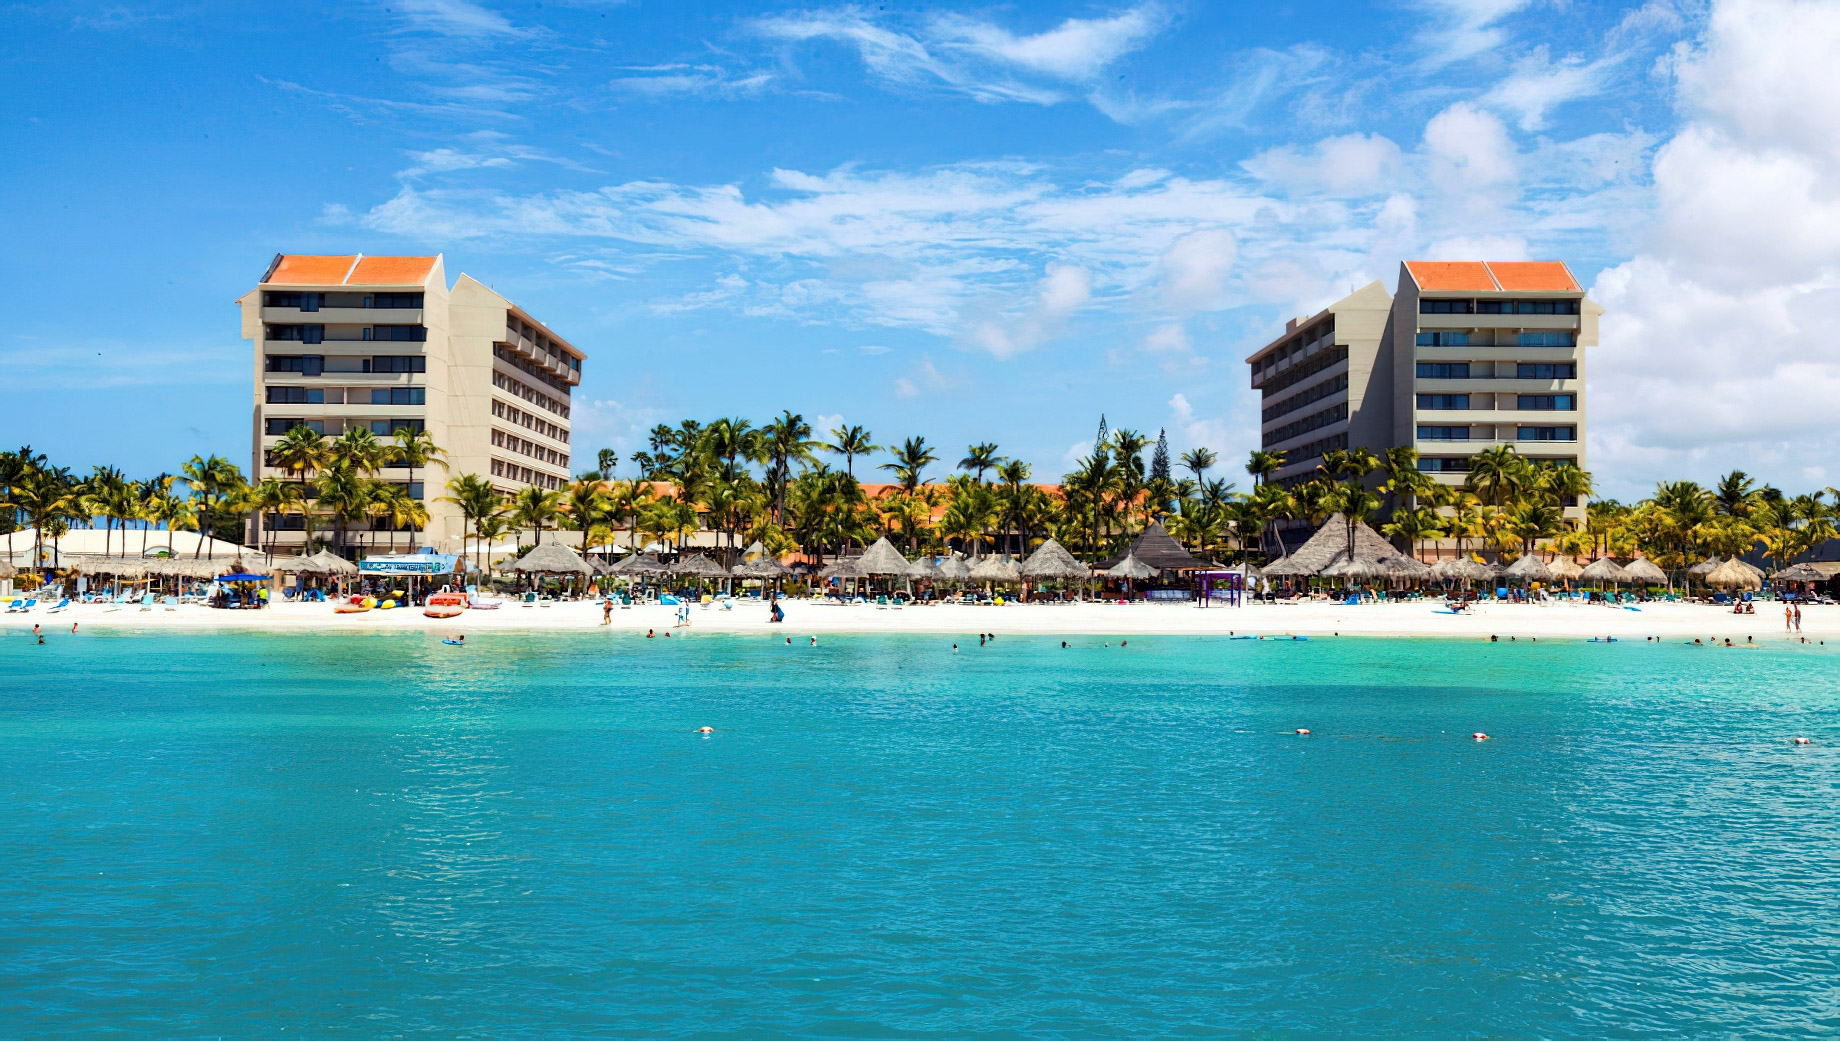 Barceló Aruba Palm Beach Resort – Noord, Aruba – Beach Resort View